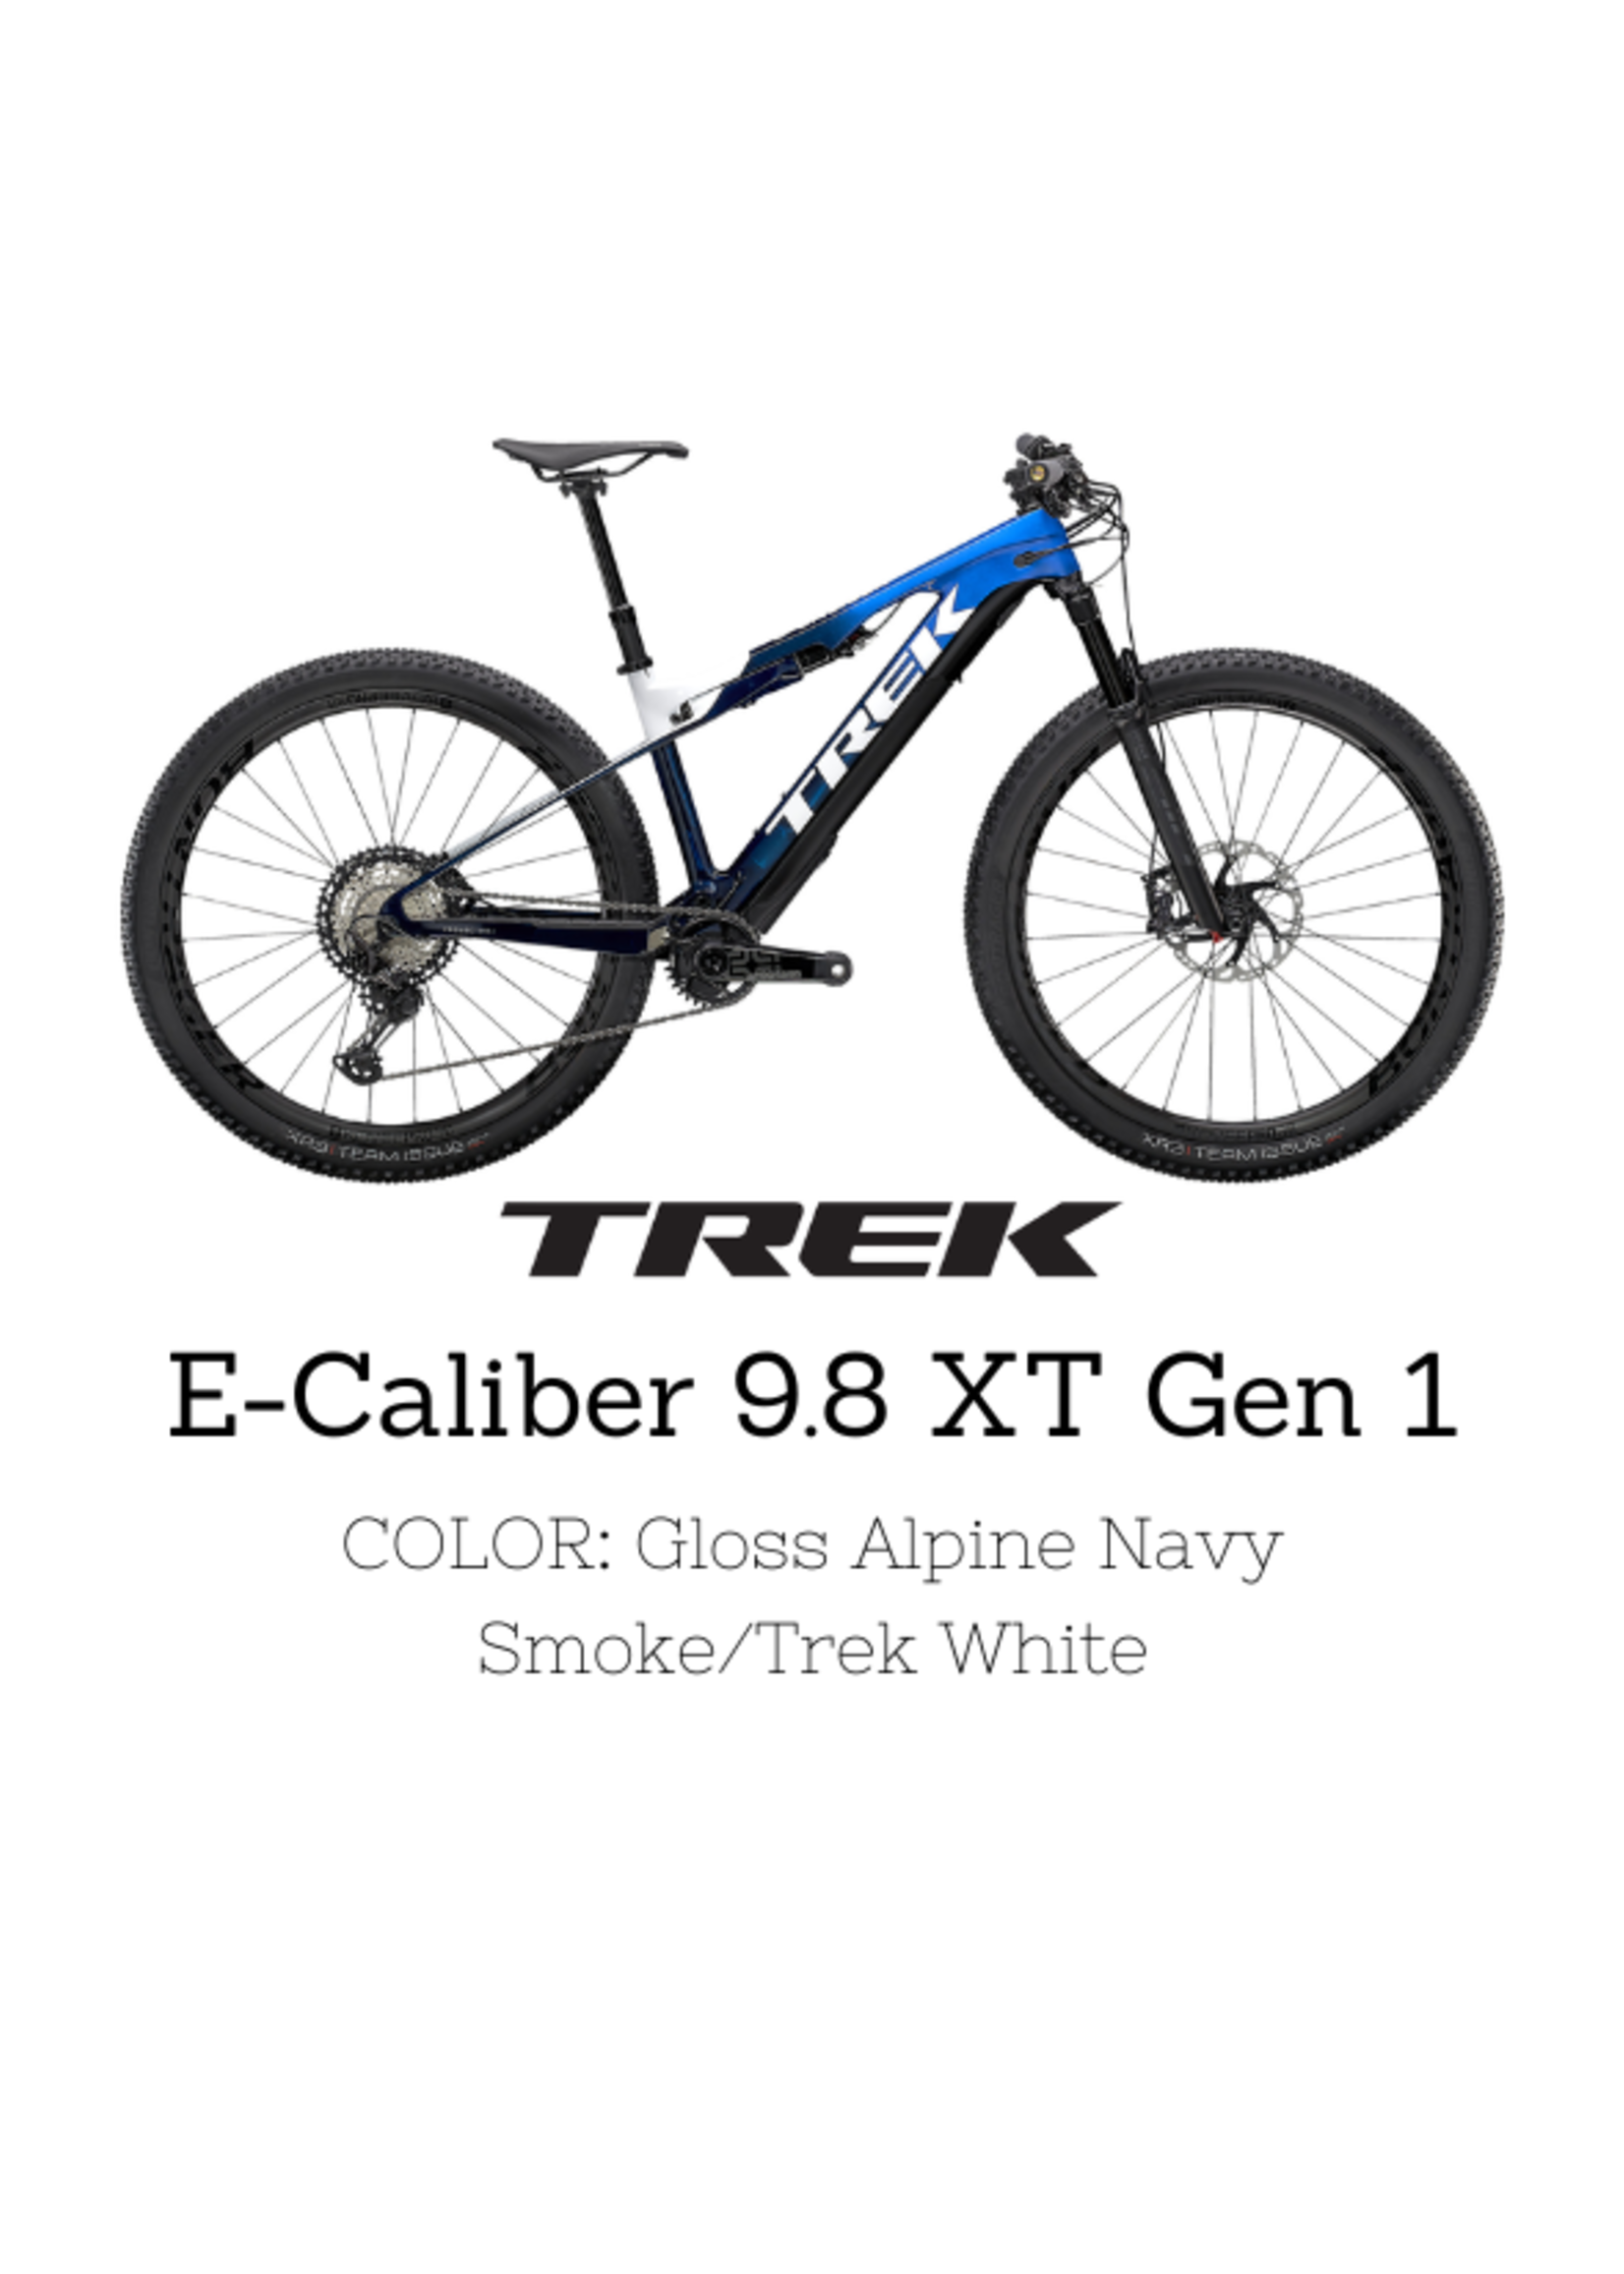 TREK Trek E-Caliber 9.8 XT Gen 1